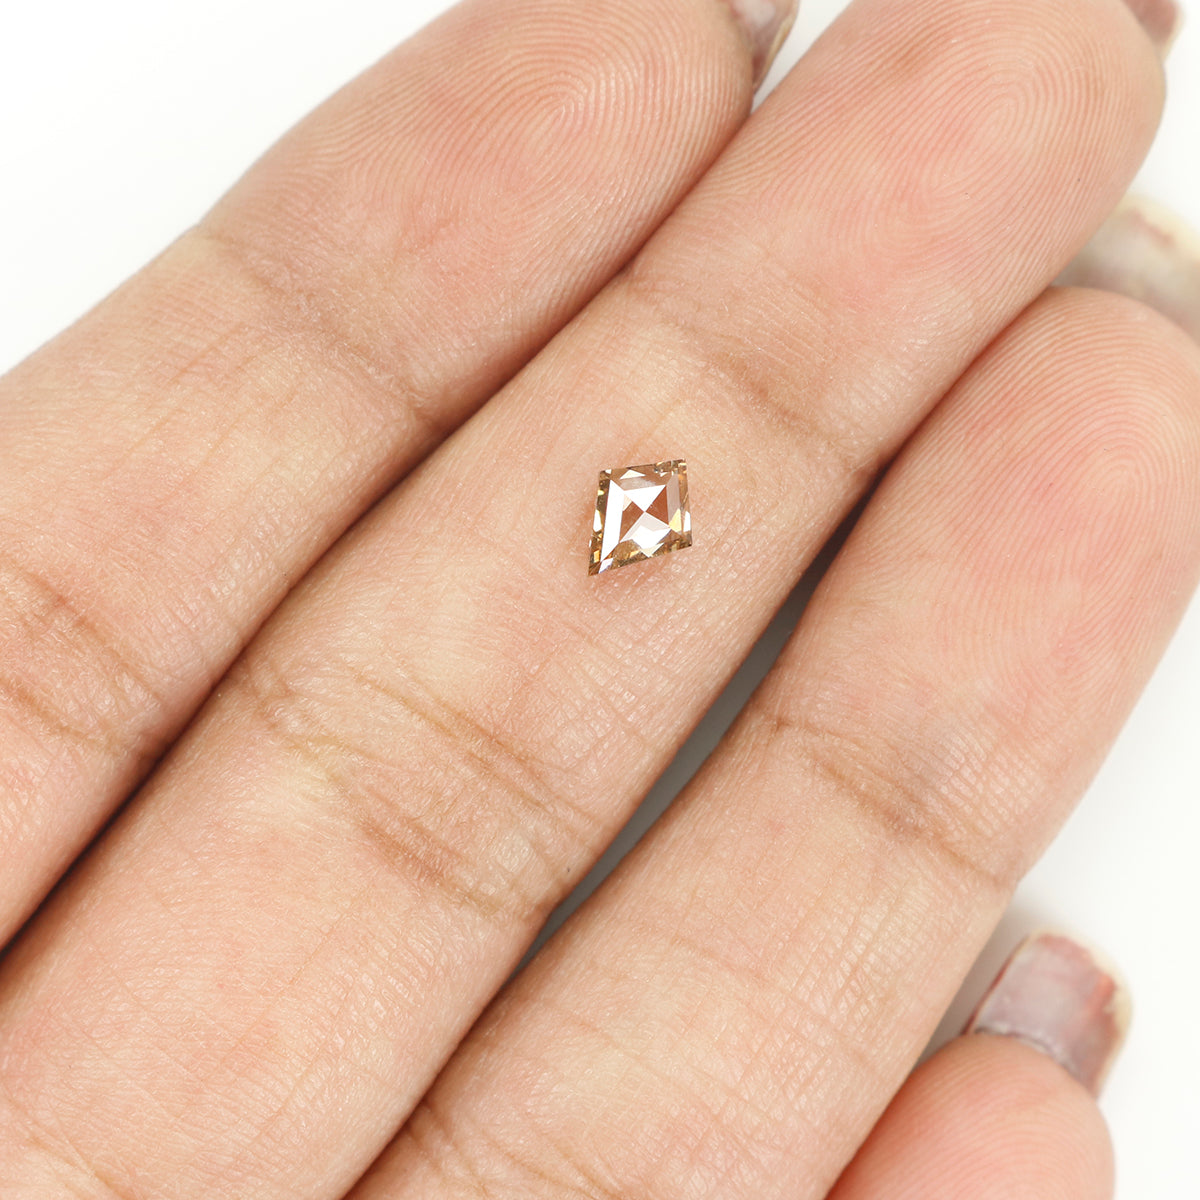 0.36 Ct Natural Loose Diamond, Kite Cut Diamond, Brown Color Diamond, Rose Cut Diamond, Real Rustic Diamond, Antique Diamond KR2320